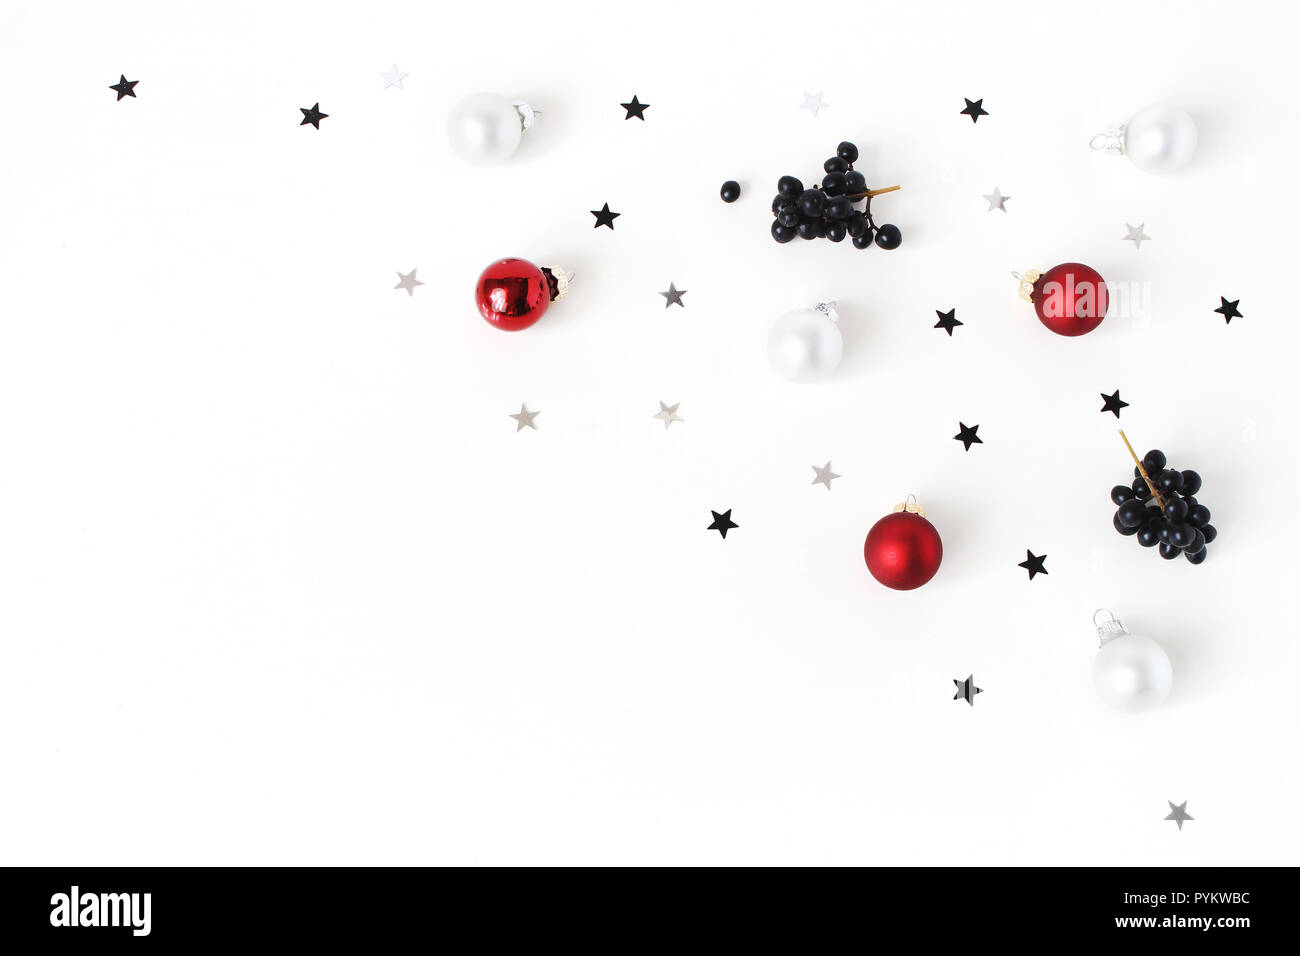 Weihnachten Komposition. Rote und weiße Weihnachten Kugeln aus Glas, Flitter, Konfetti Sterne silber und schwarz, Liguster Ligustrum Beeren auf weißem Hintergrund. Flach, Ansicht von oben. Dekorative winter Muster. Stockfoto